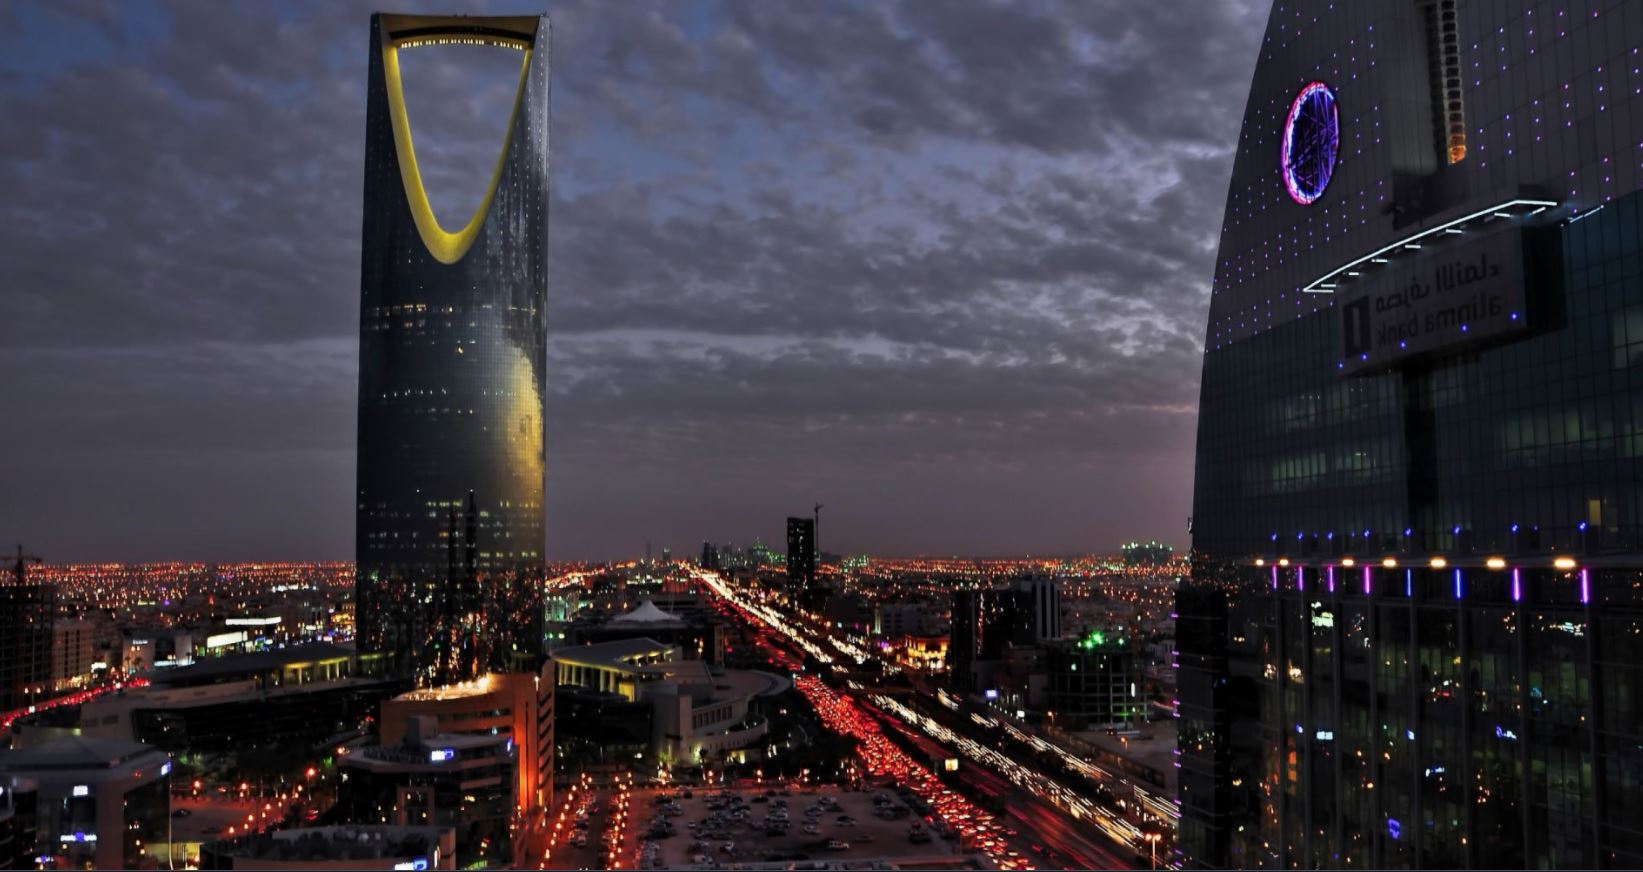 arabia saudita levanta prohibicion cines partir 2018